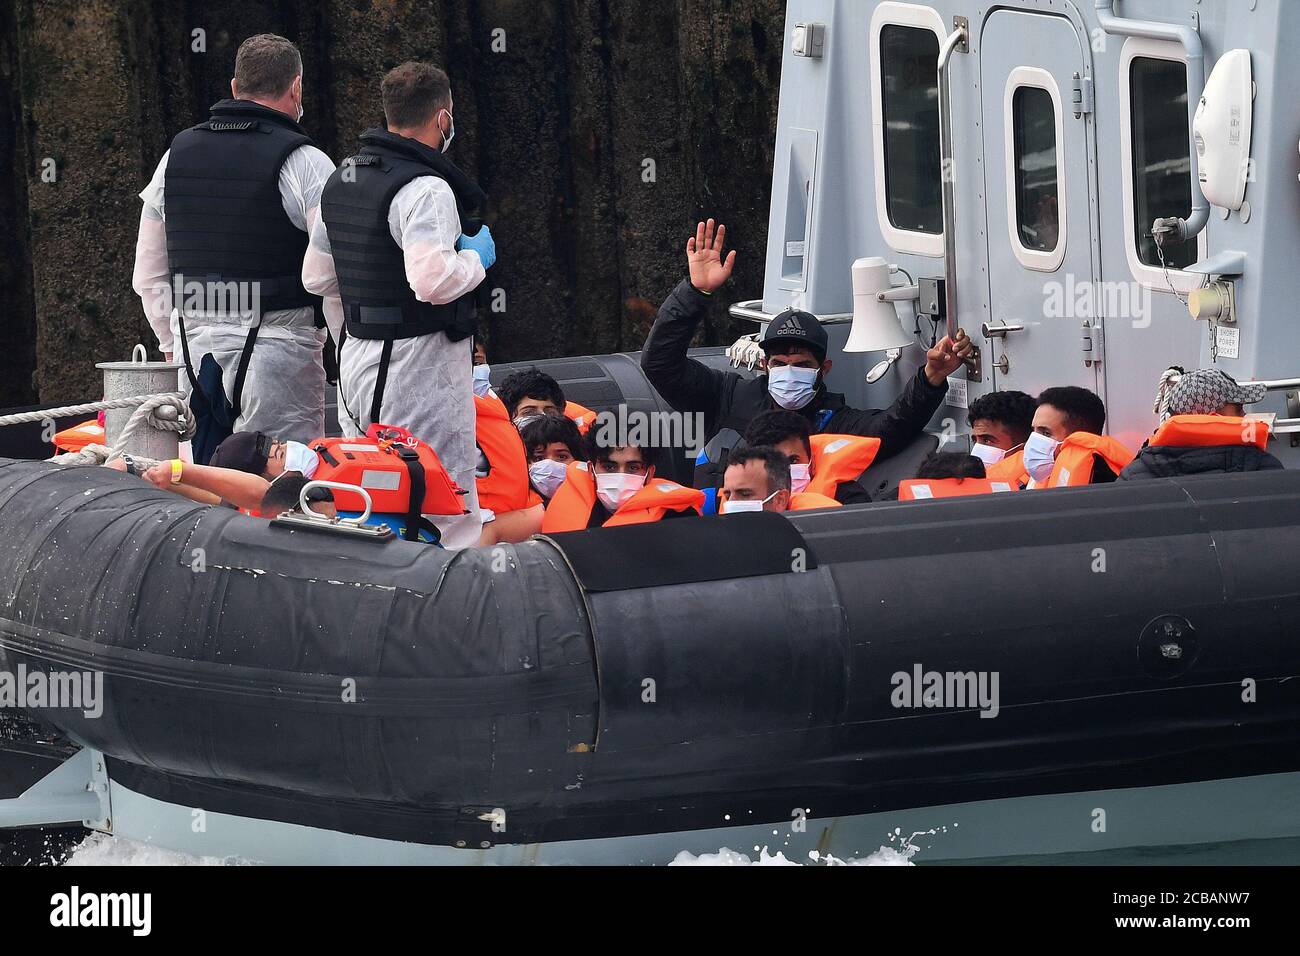 Un grupo de personas que se cree que son migrantes, uno está agitando, son traídas a Dover, Kent, por oficiales de la Fuerza Fronteriza después de un número de pequeños incidentes de barcos en el Canal de la Mancha a principios de hoy. Foto de stock